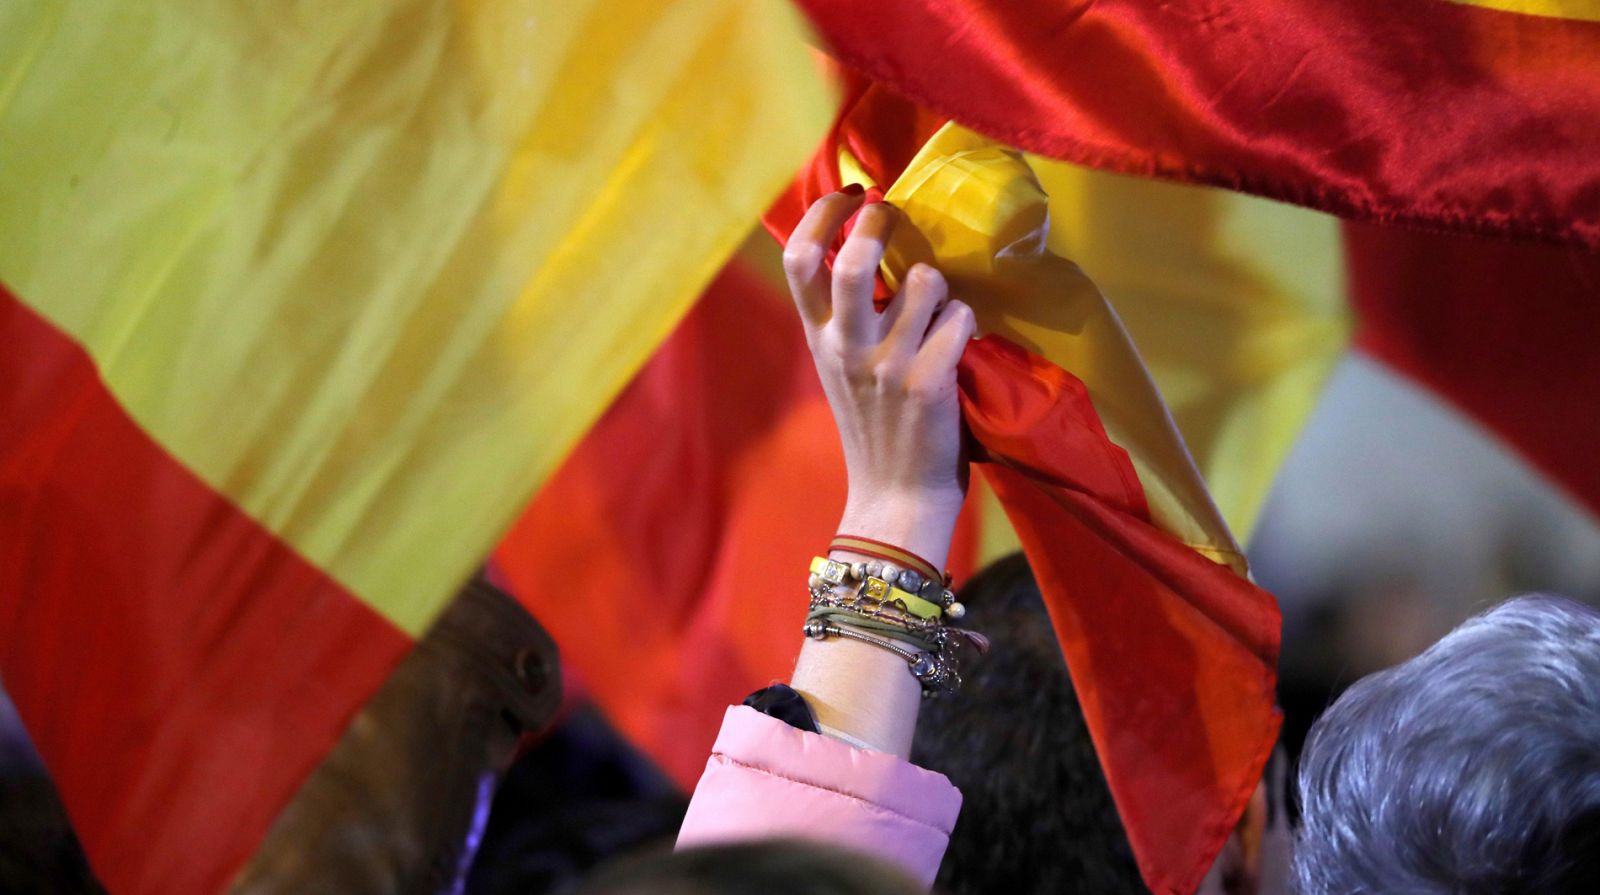 La Ley 39/1981 "prohíbe la utilización en la bandera de España de cualesquiera símbolos o siglas de partidos políticos, sindicatos, asociaciones o entidades privadas".